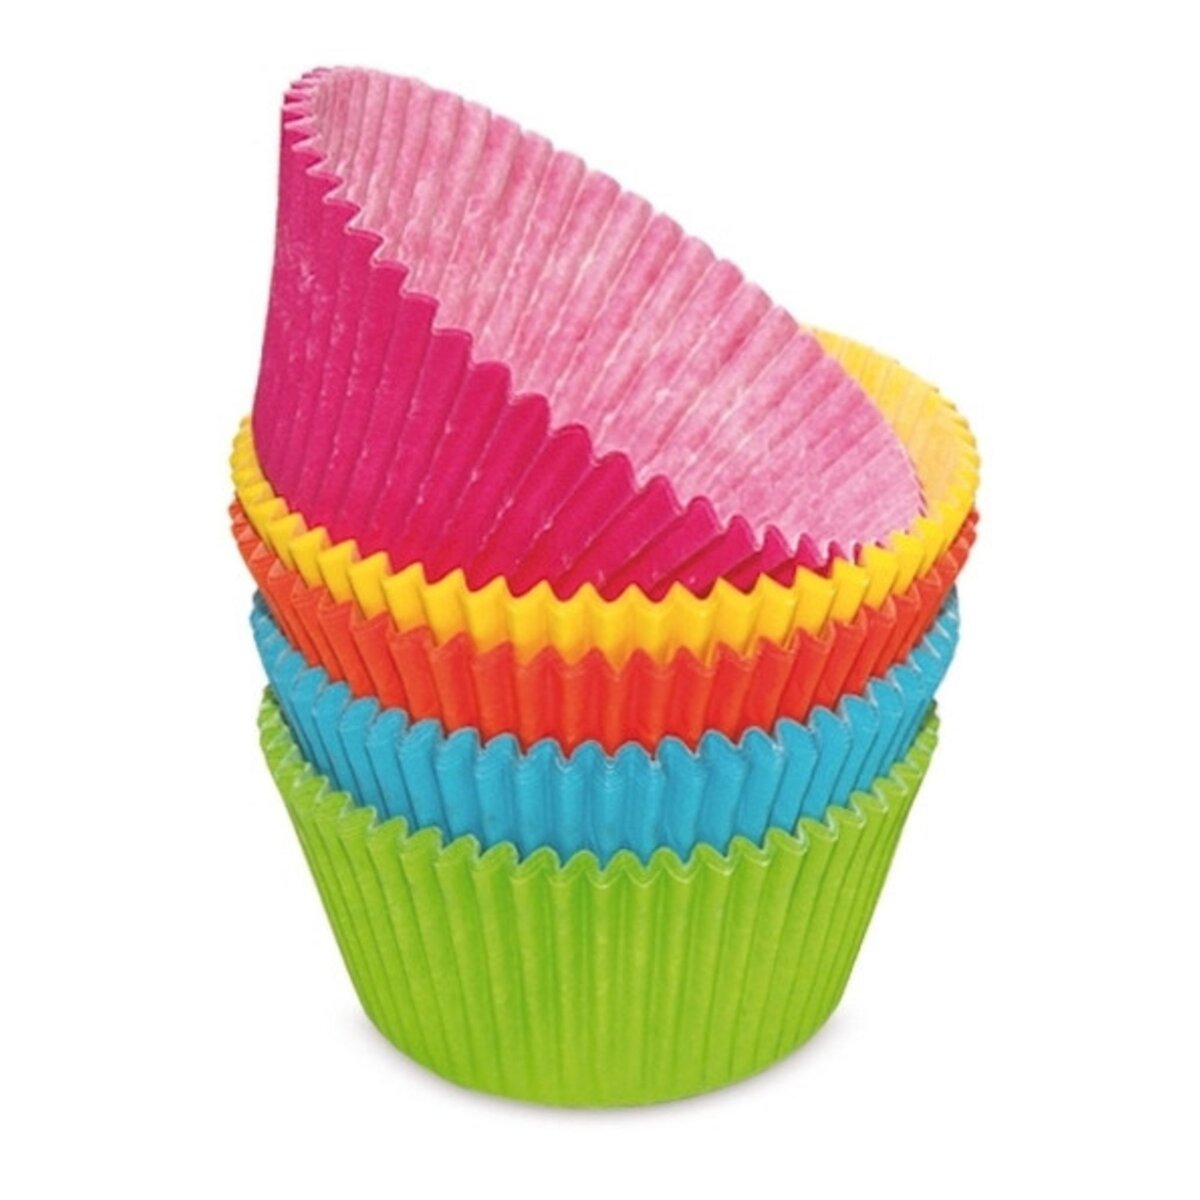 Caissette Muffin Cup assortiment de couleurs - Ø 5 cm x 4.5 cm (h